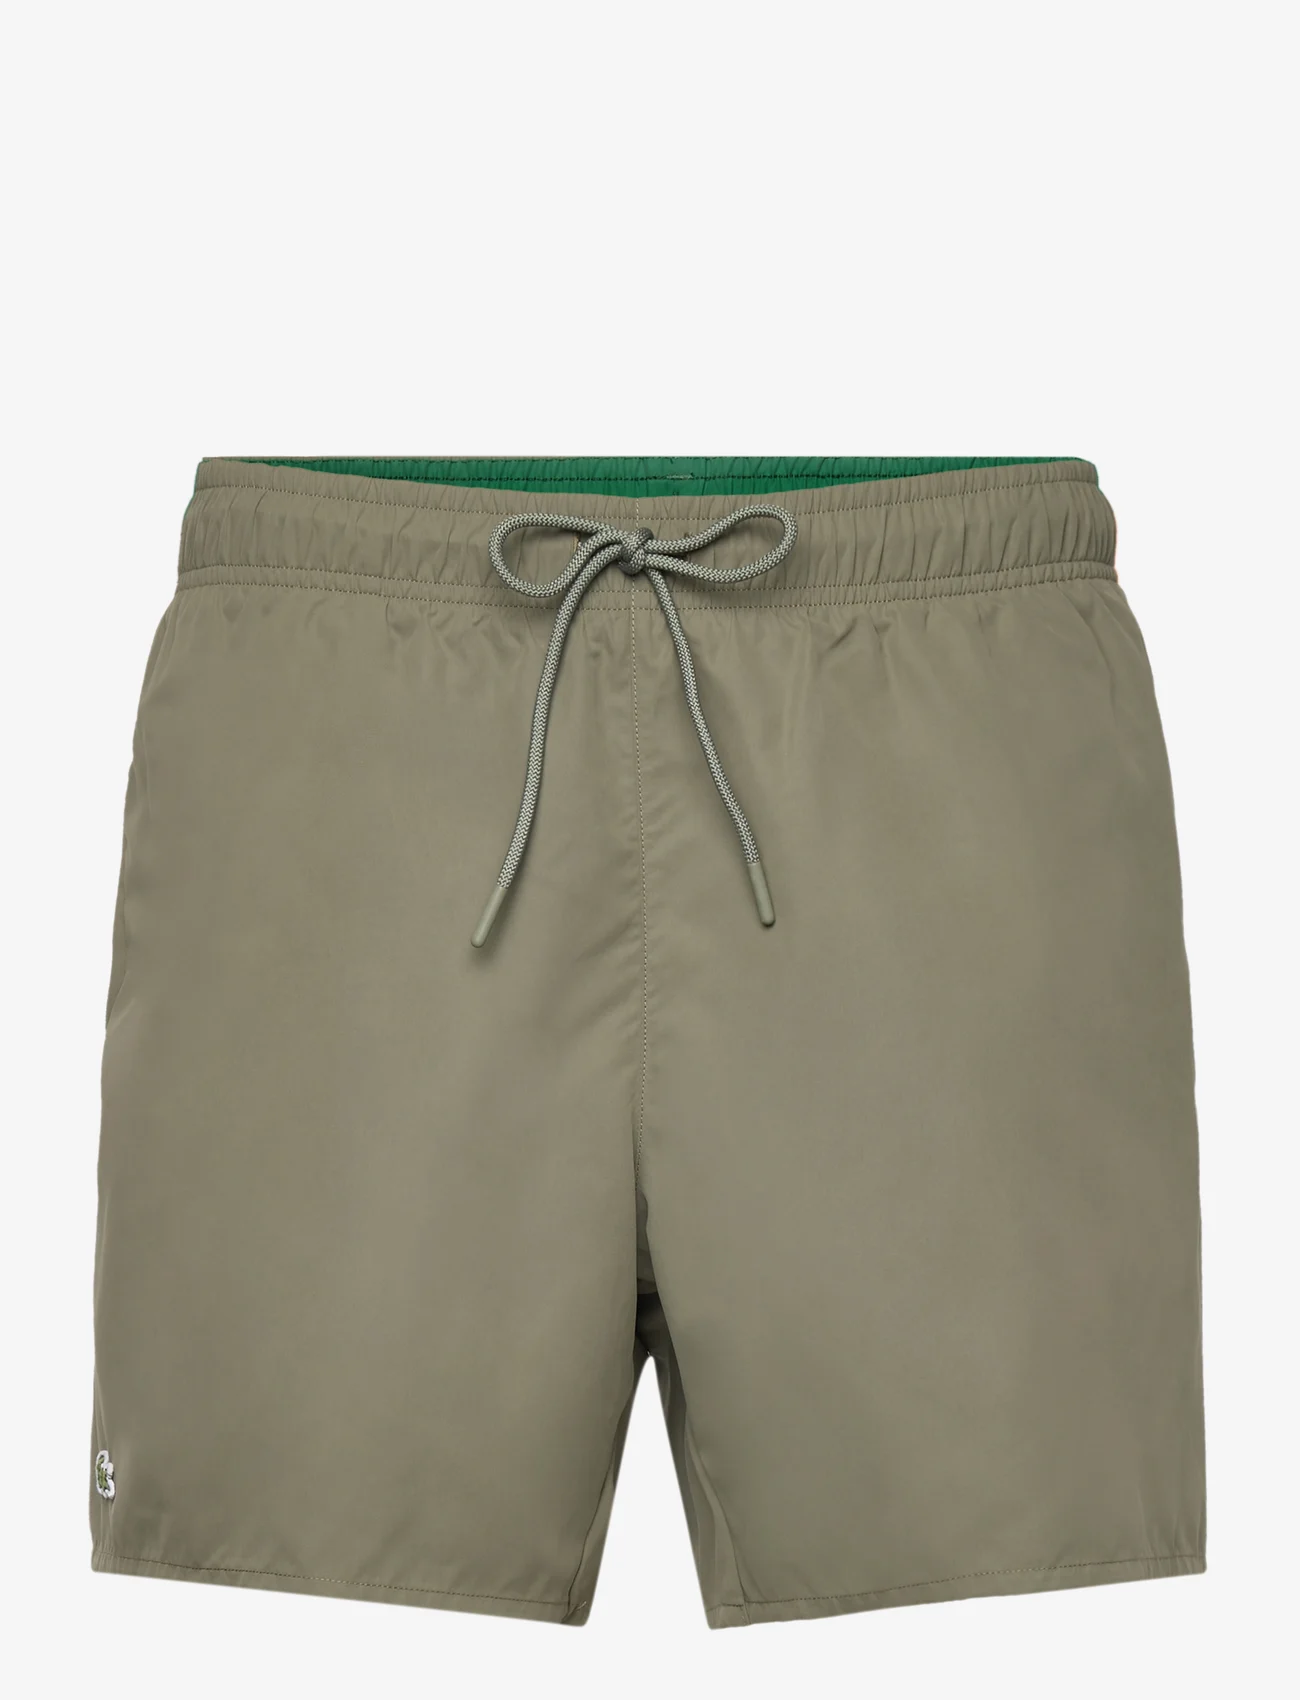 Lacoste - SWIMWEAR - swim shorts - tank/green - 0